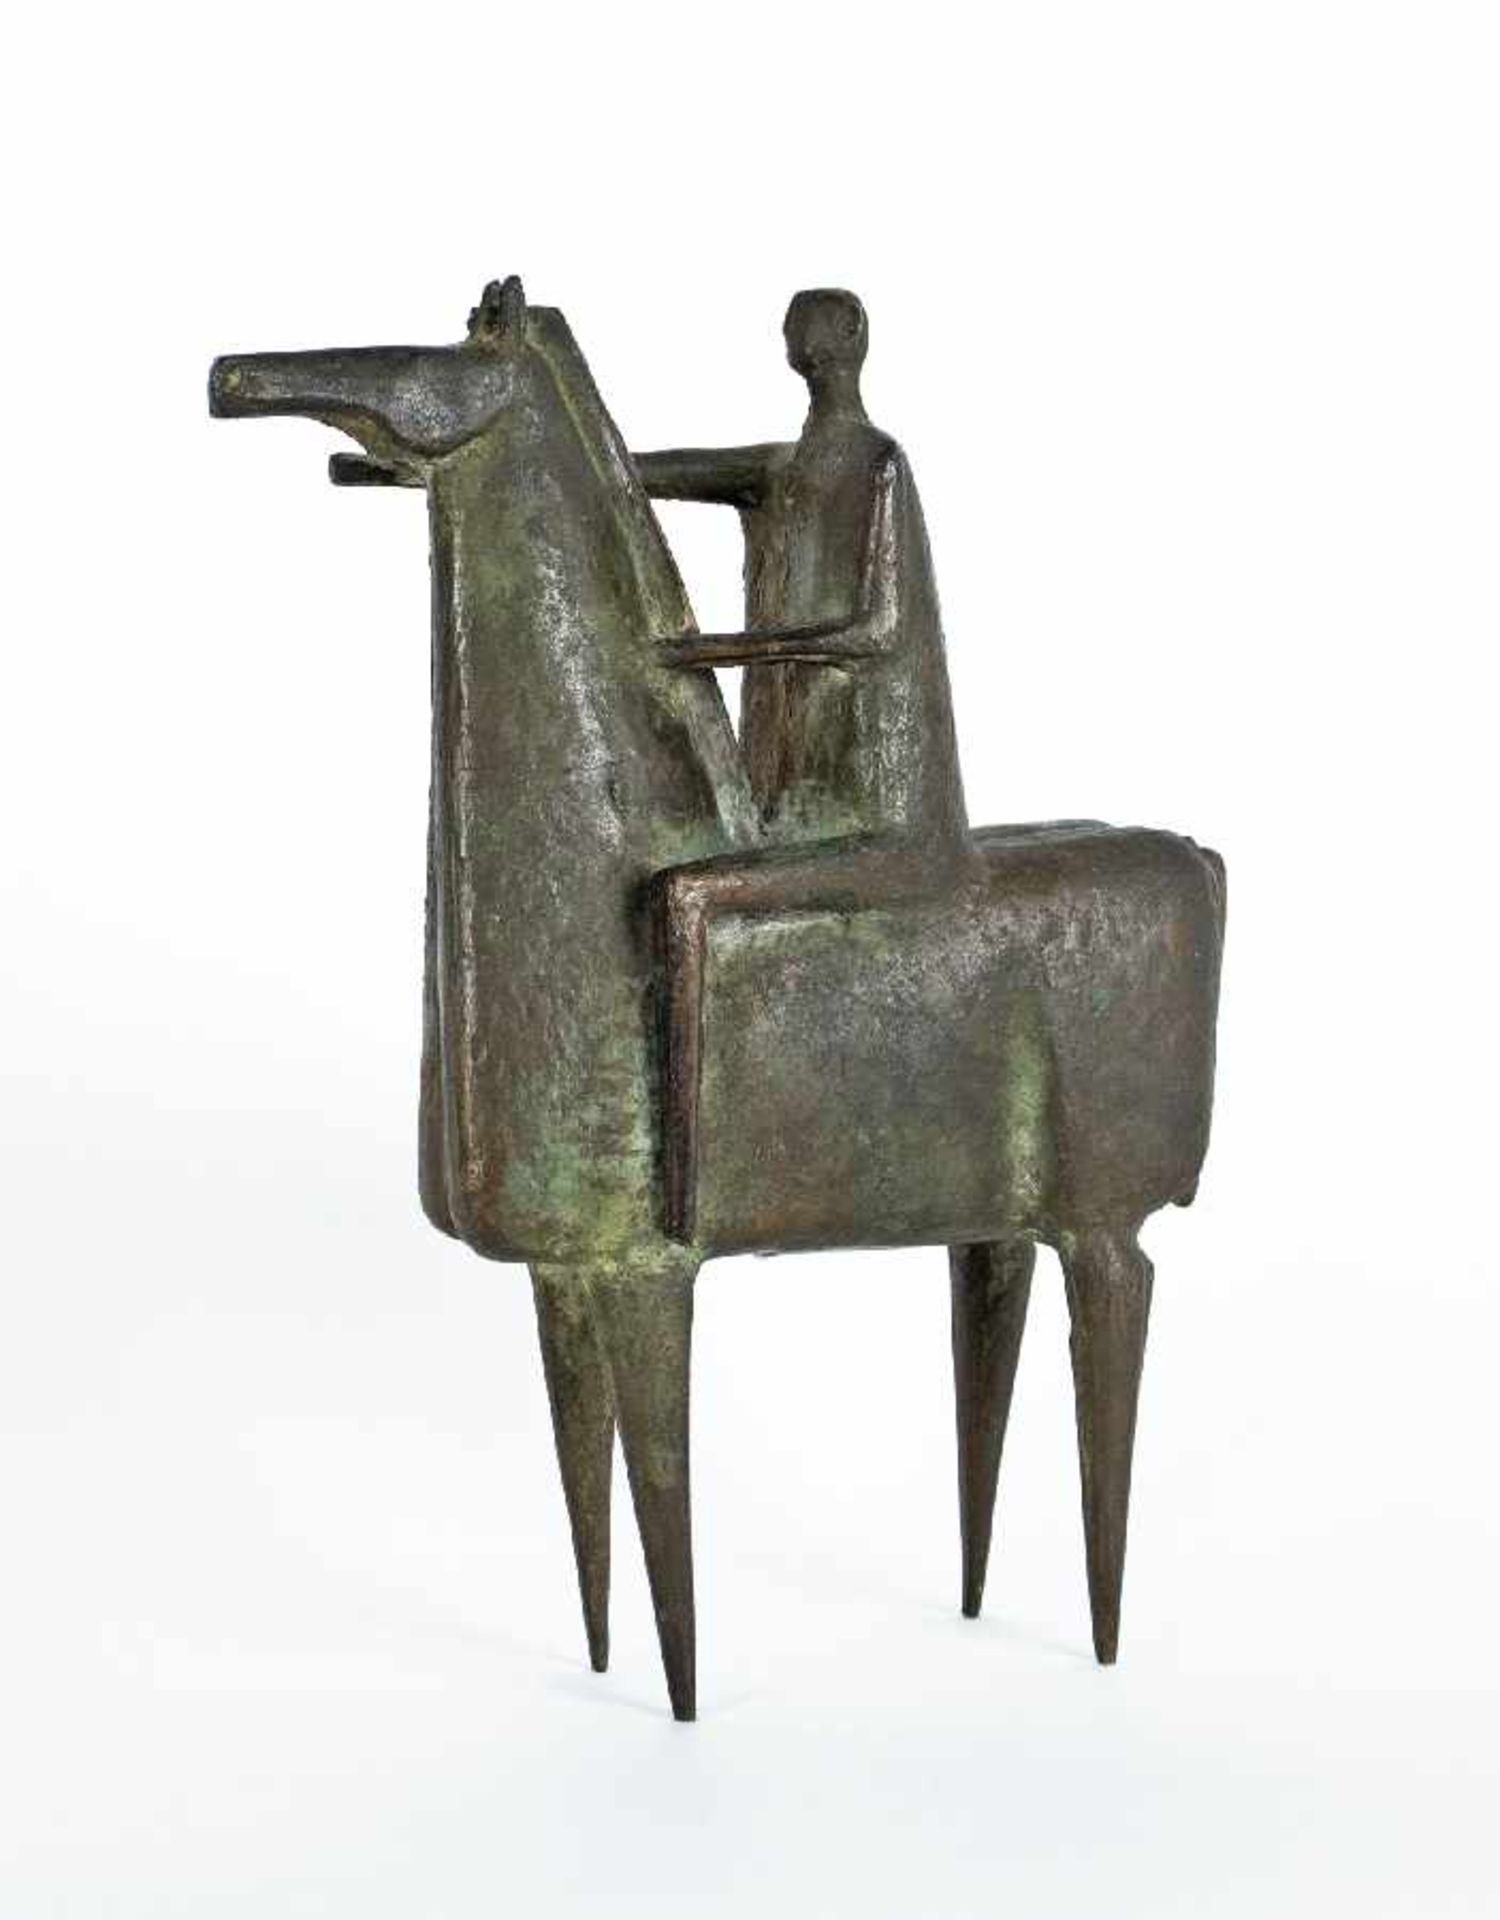 Bildhauer der Mitte des 20. Jh. Reiter Bronze; H 26 cm Sculptor of the middle of the 20th century